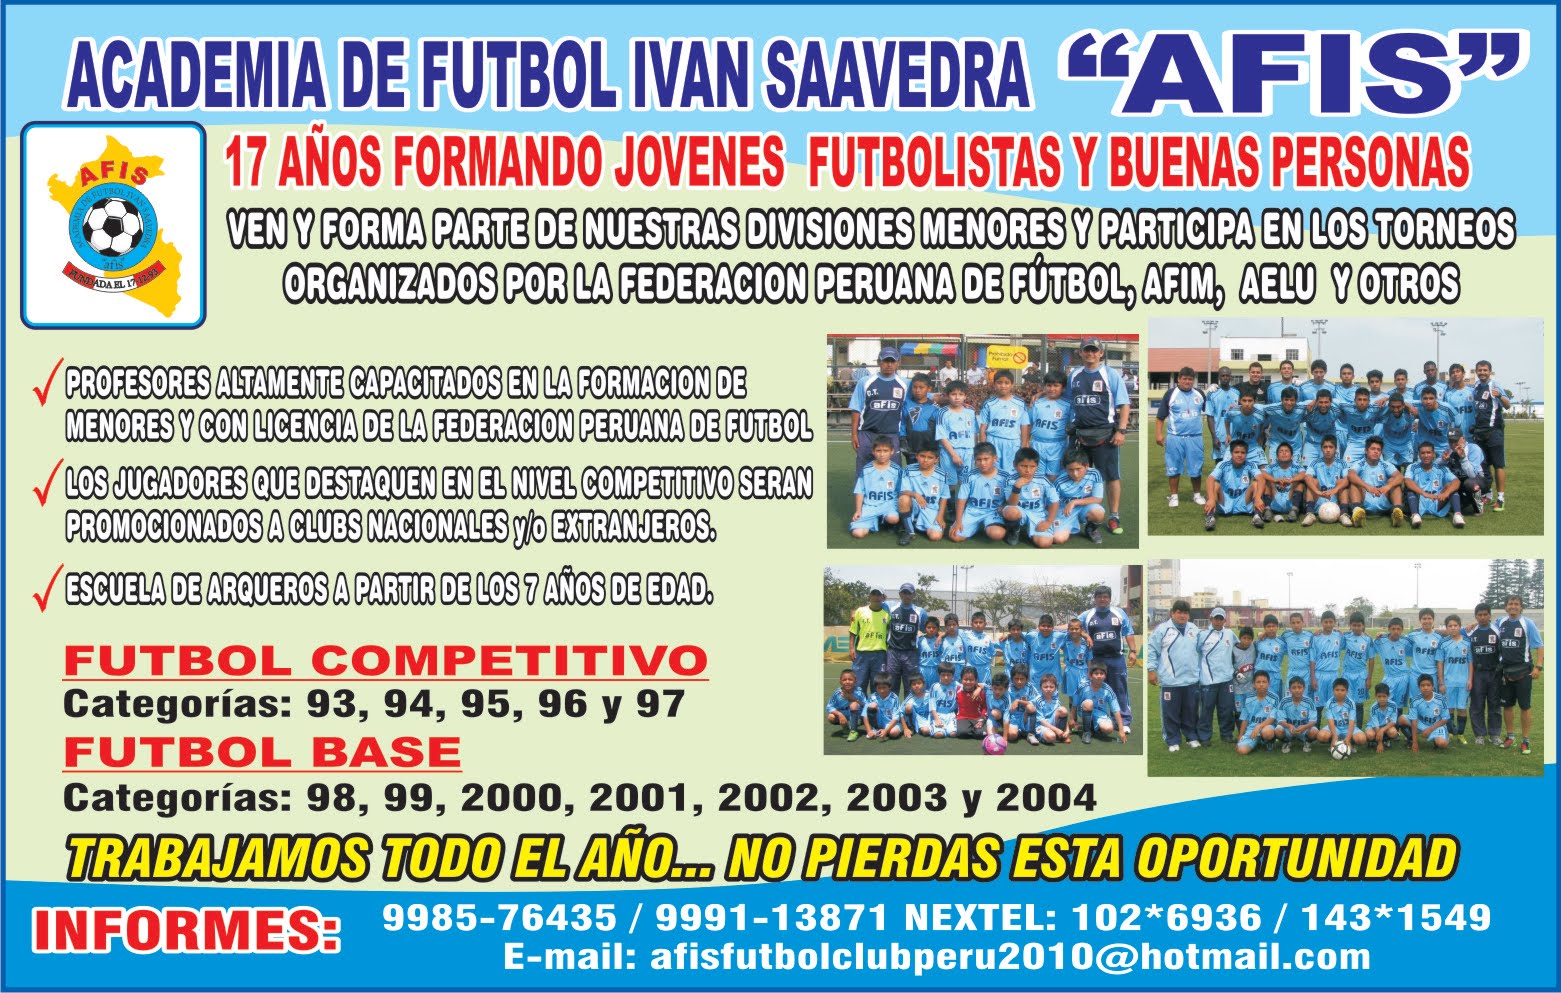 Club Academia de fútbol Iván Saavedra "afis" 